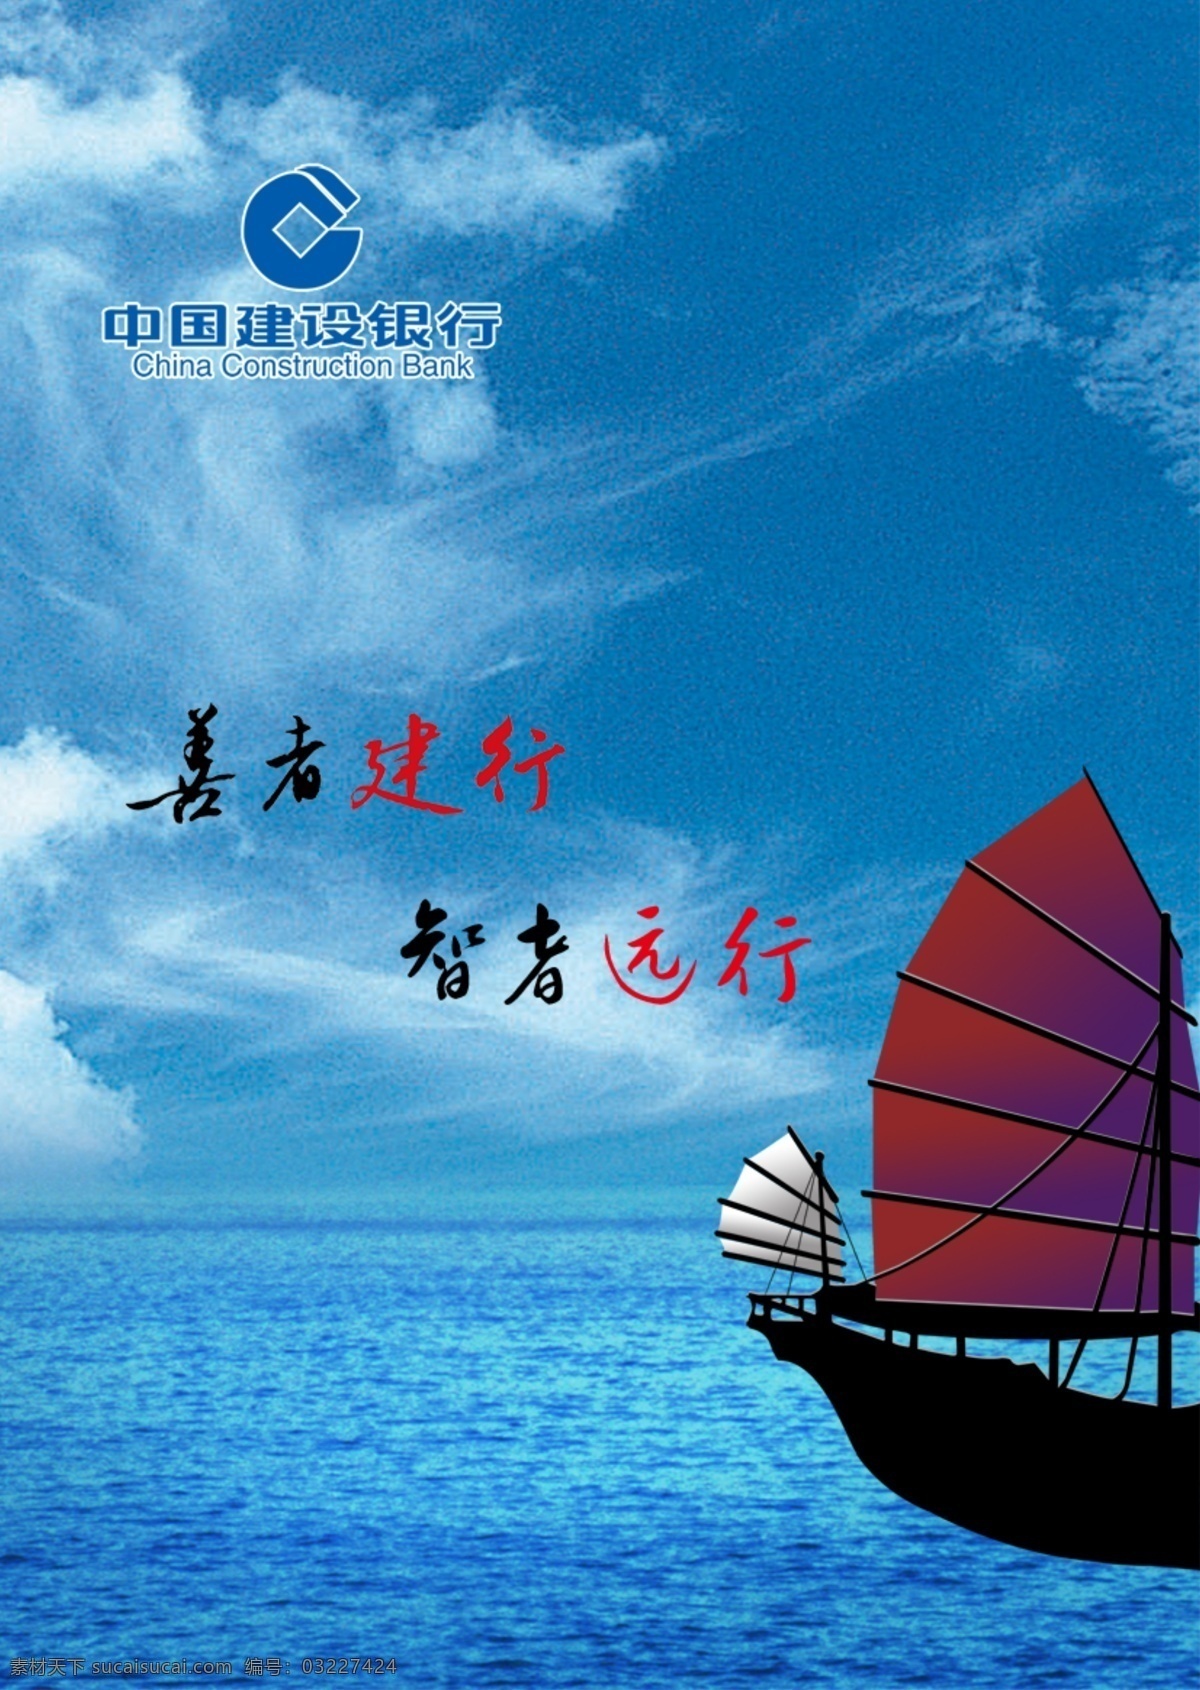 蓝色海洋背景 中国建行 智者远行 善者建行 蓝色海洋 帆船